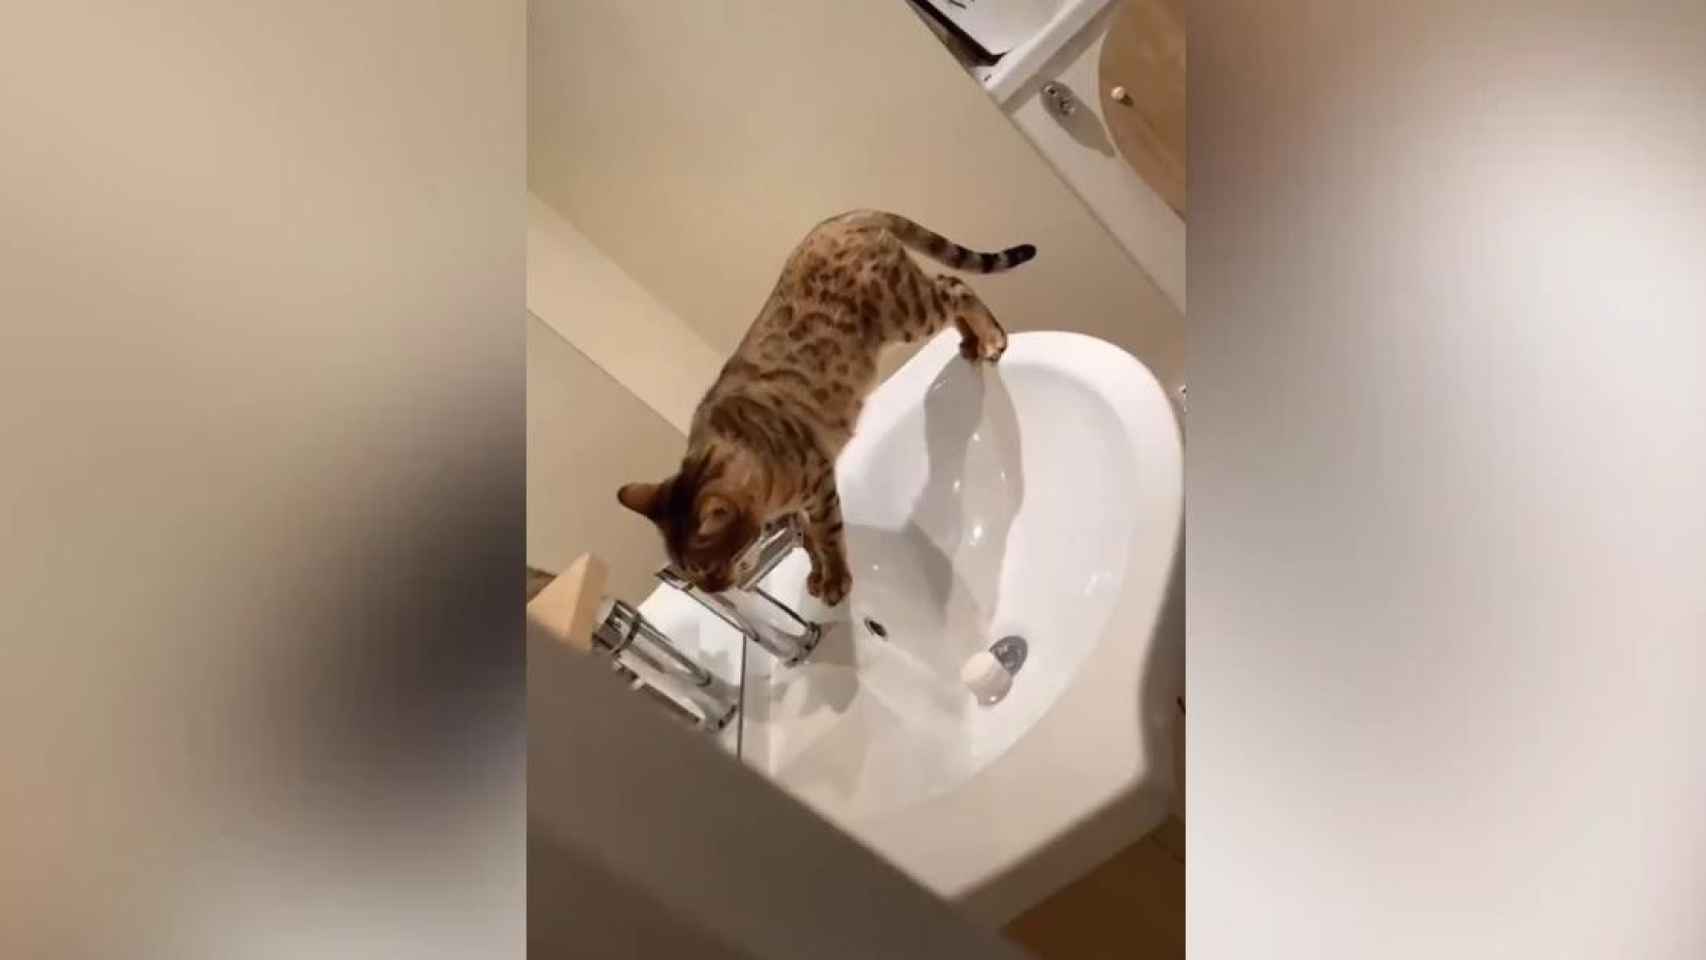 Una gata juega con el grifo del baño / TWITTER